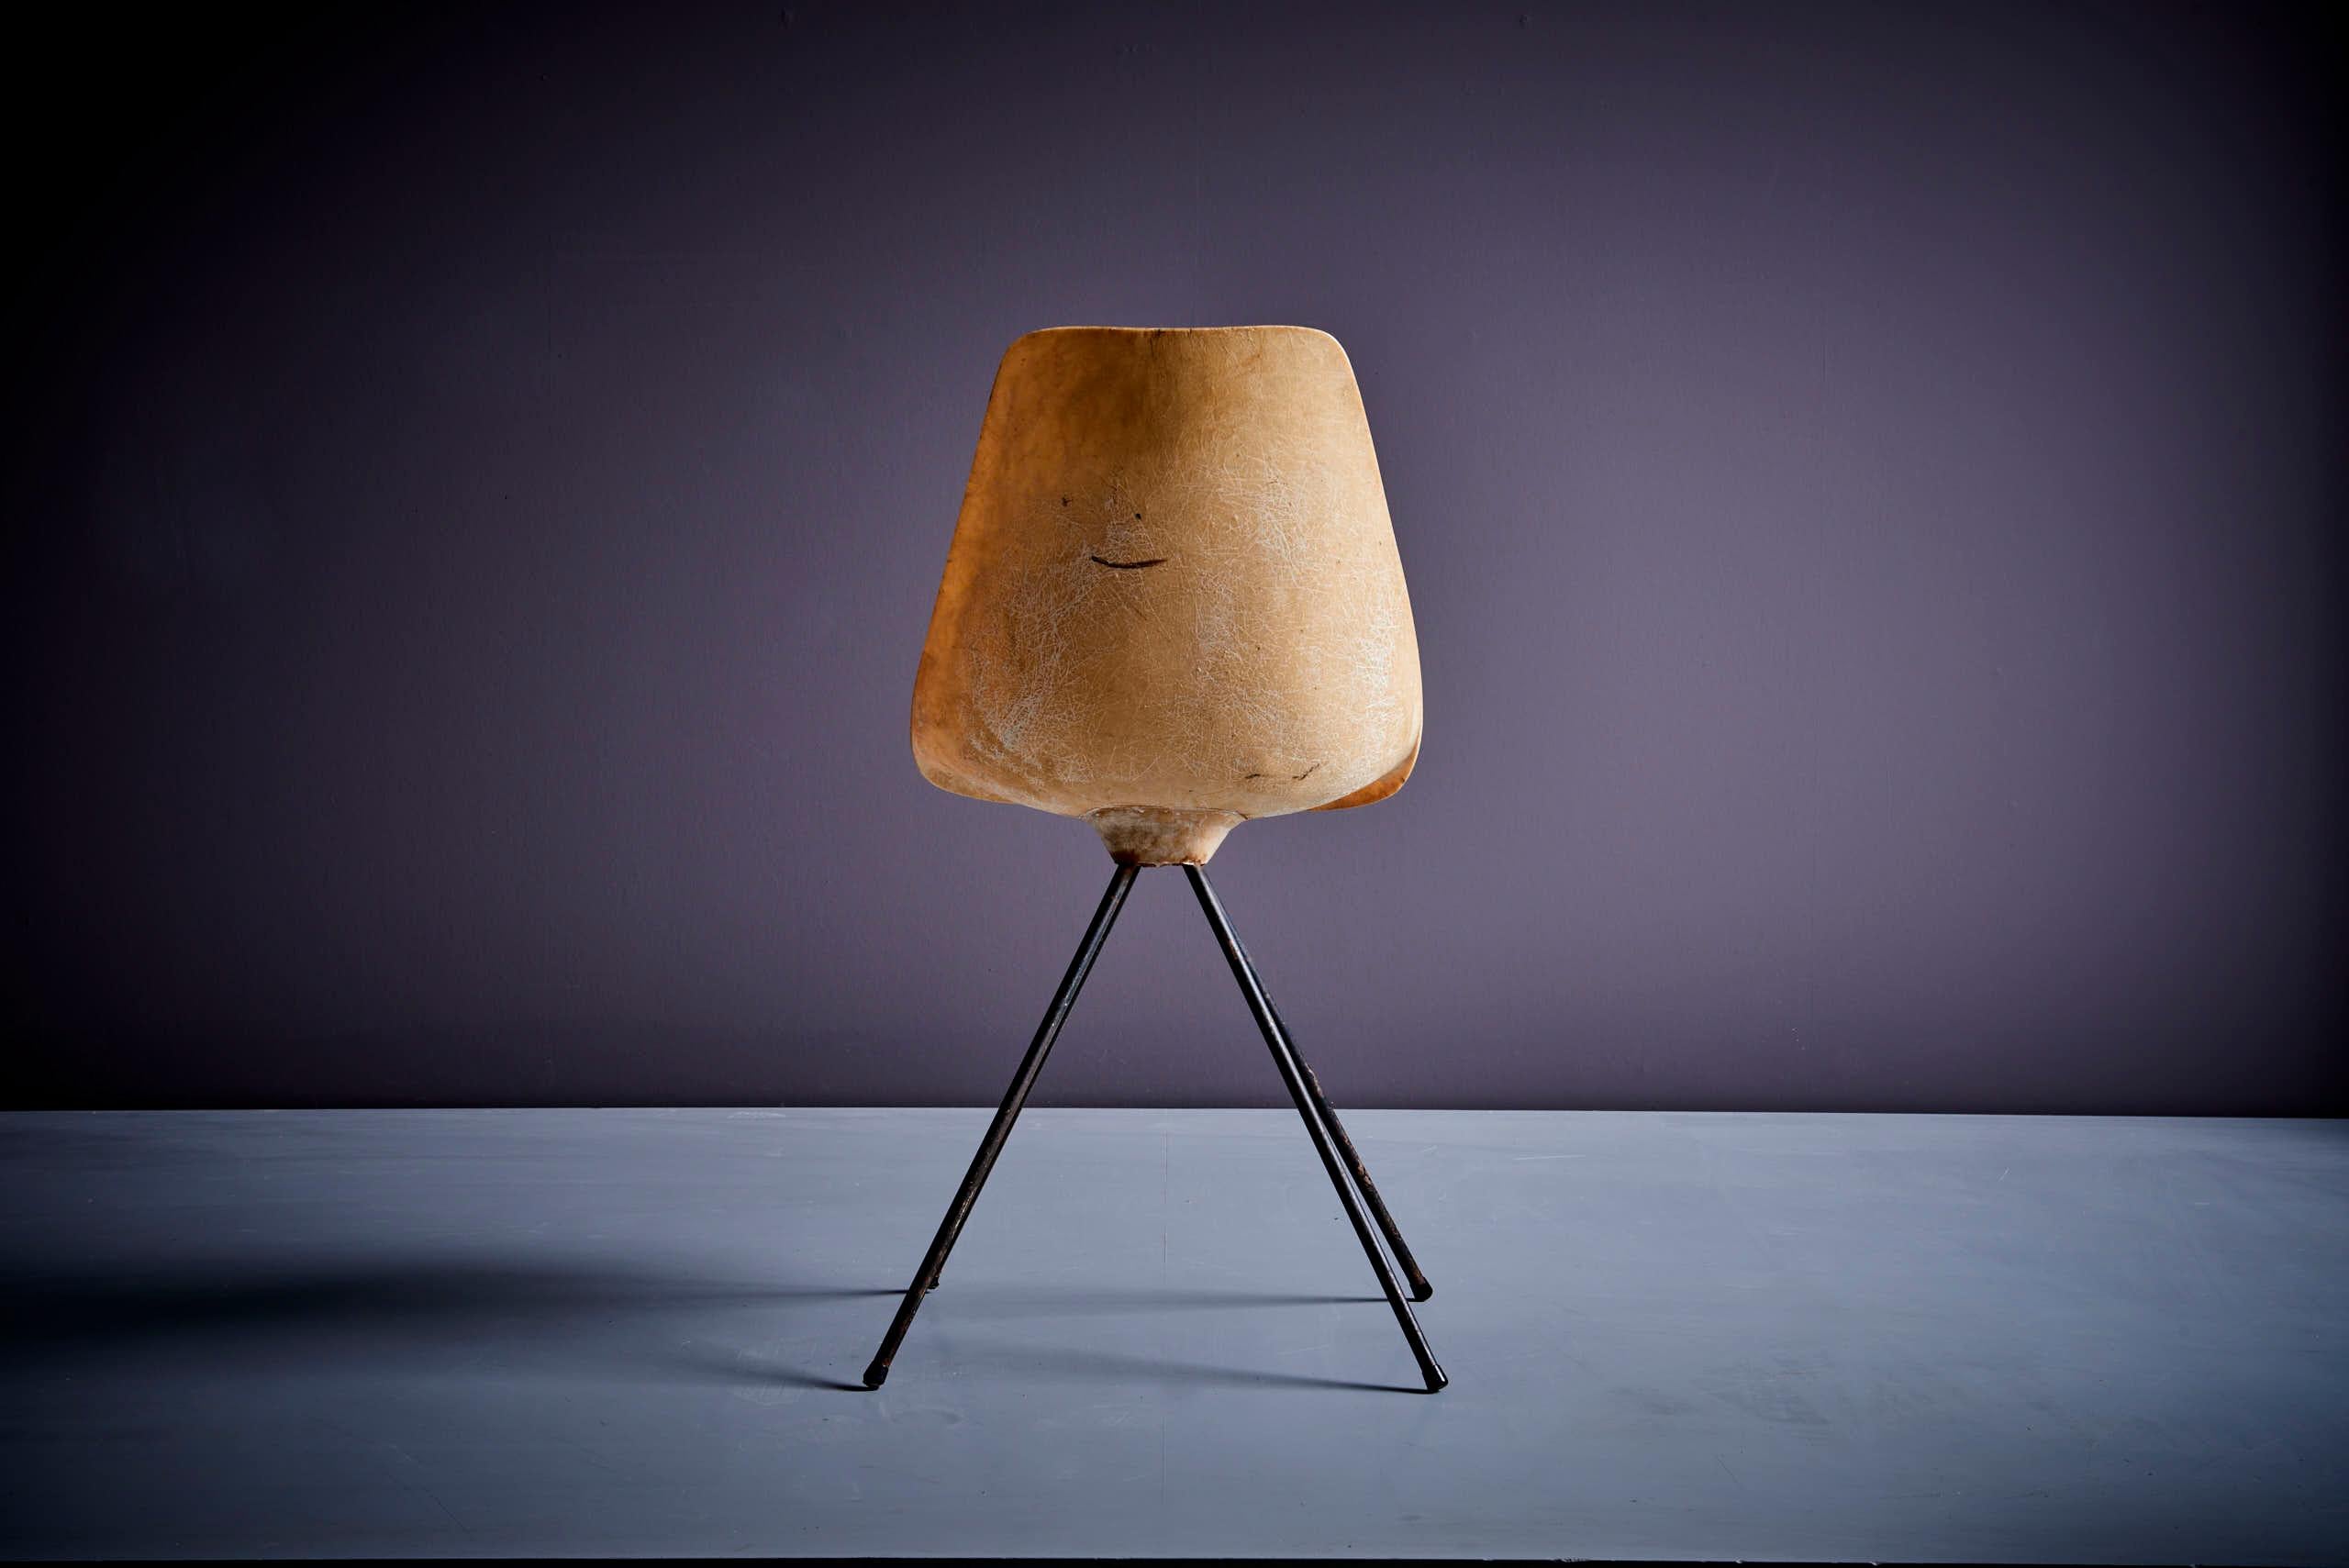 Jean-René Picard for S.E.T.A Fiberglass Chair France - 1950s For Sale 2